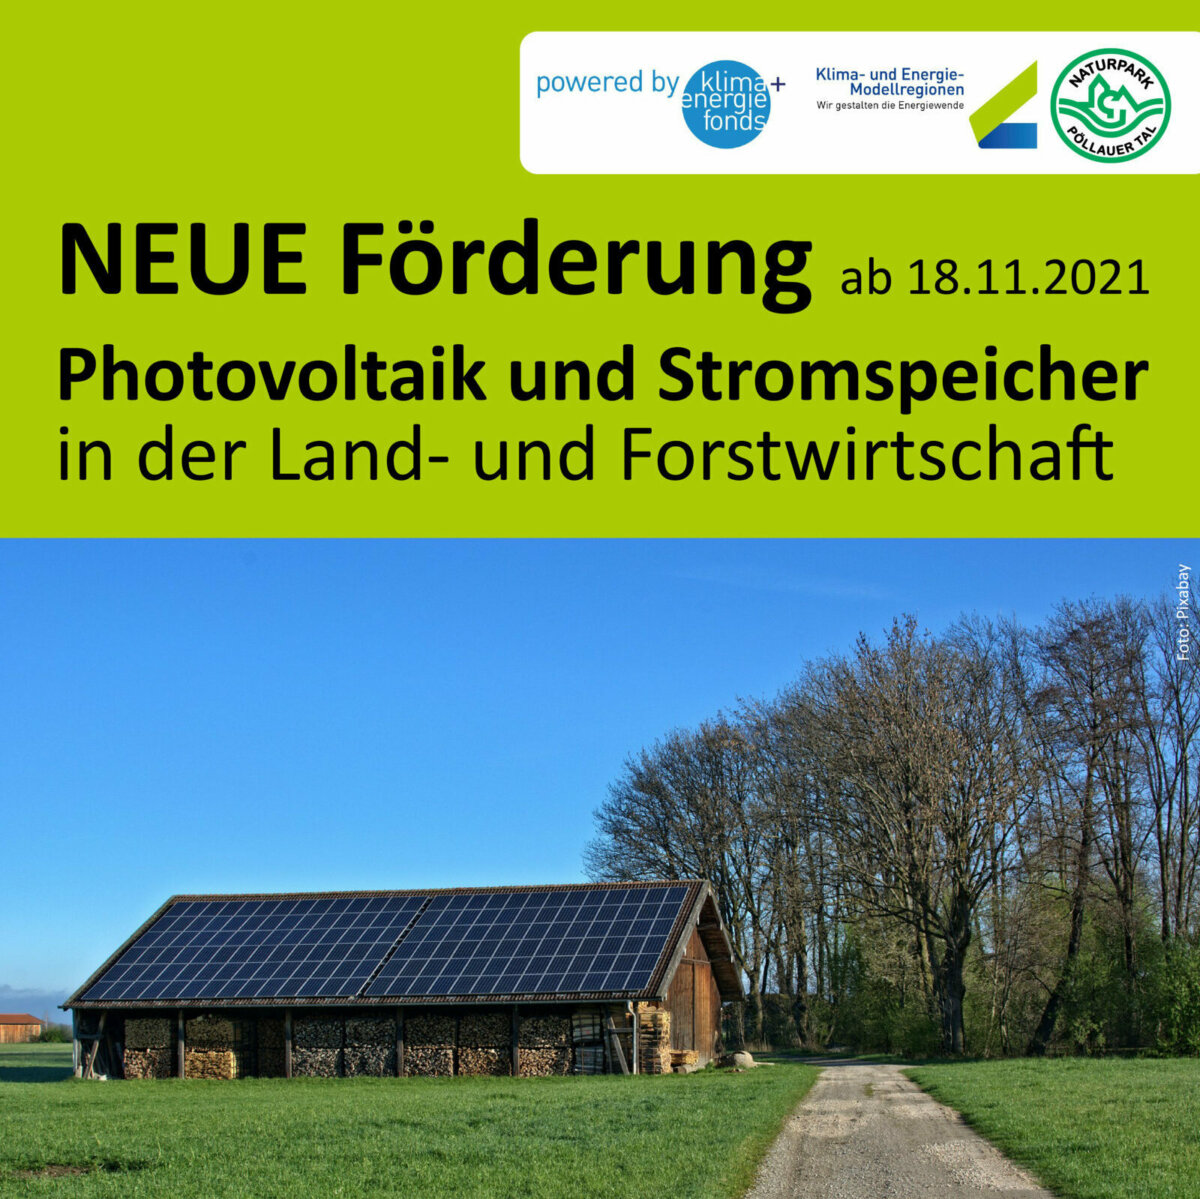 Neue Förderung für Photovoltaik in der Landwirtschaft 